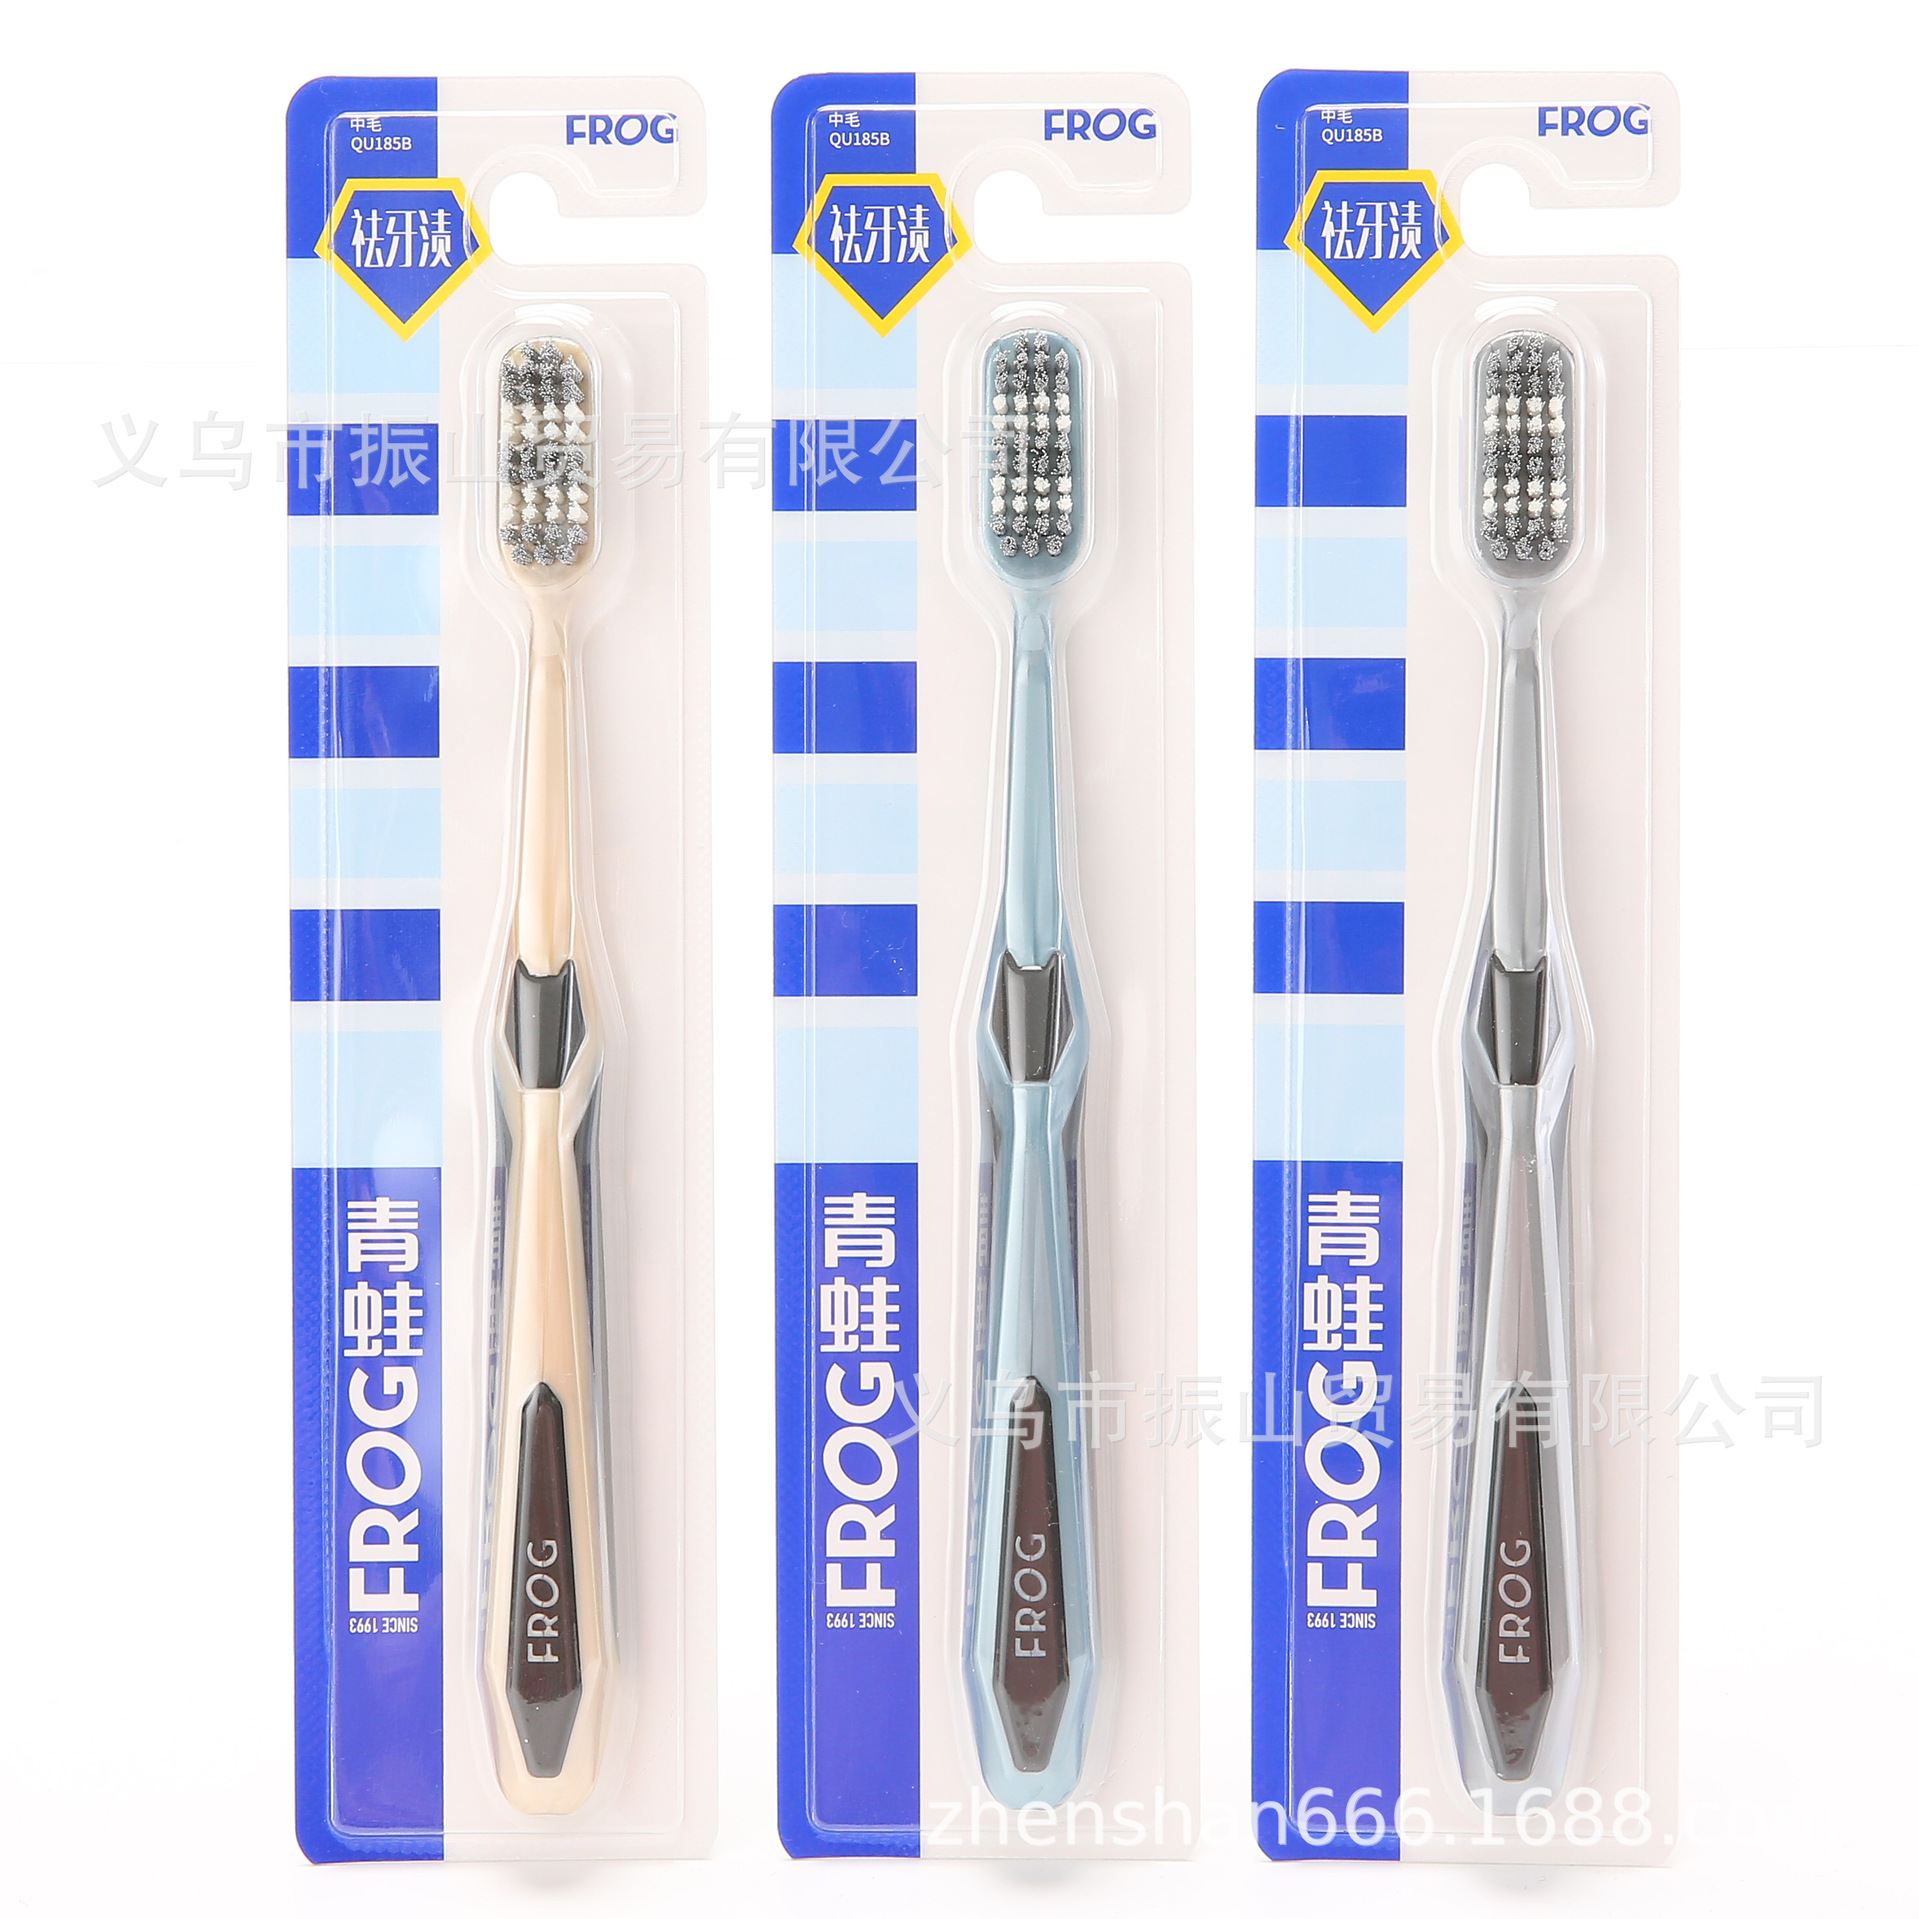 Frog Adult Toothbrush Qj185b Spiral Medium Hair Cleaning Toothbrush